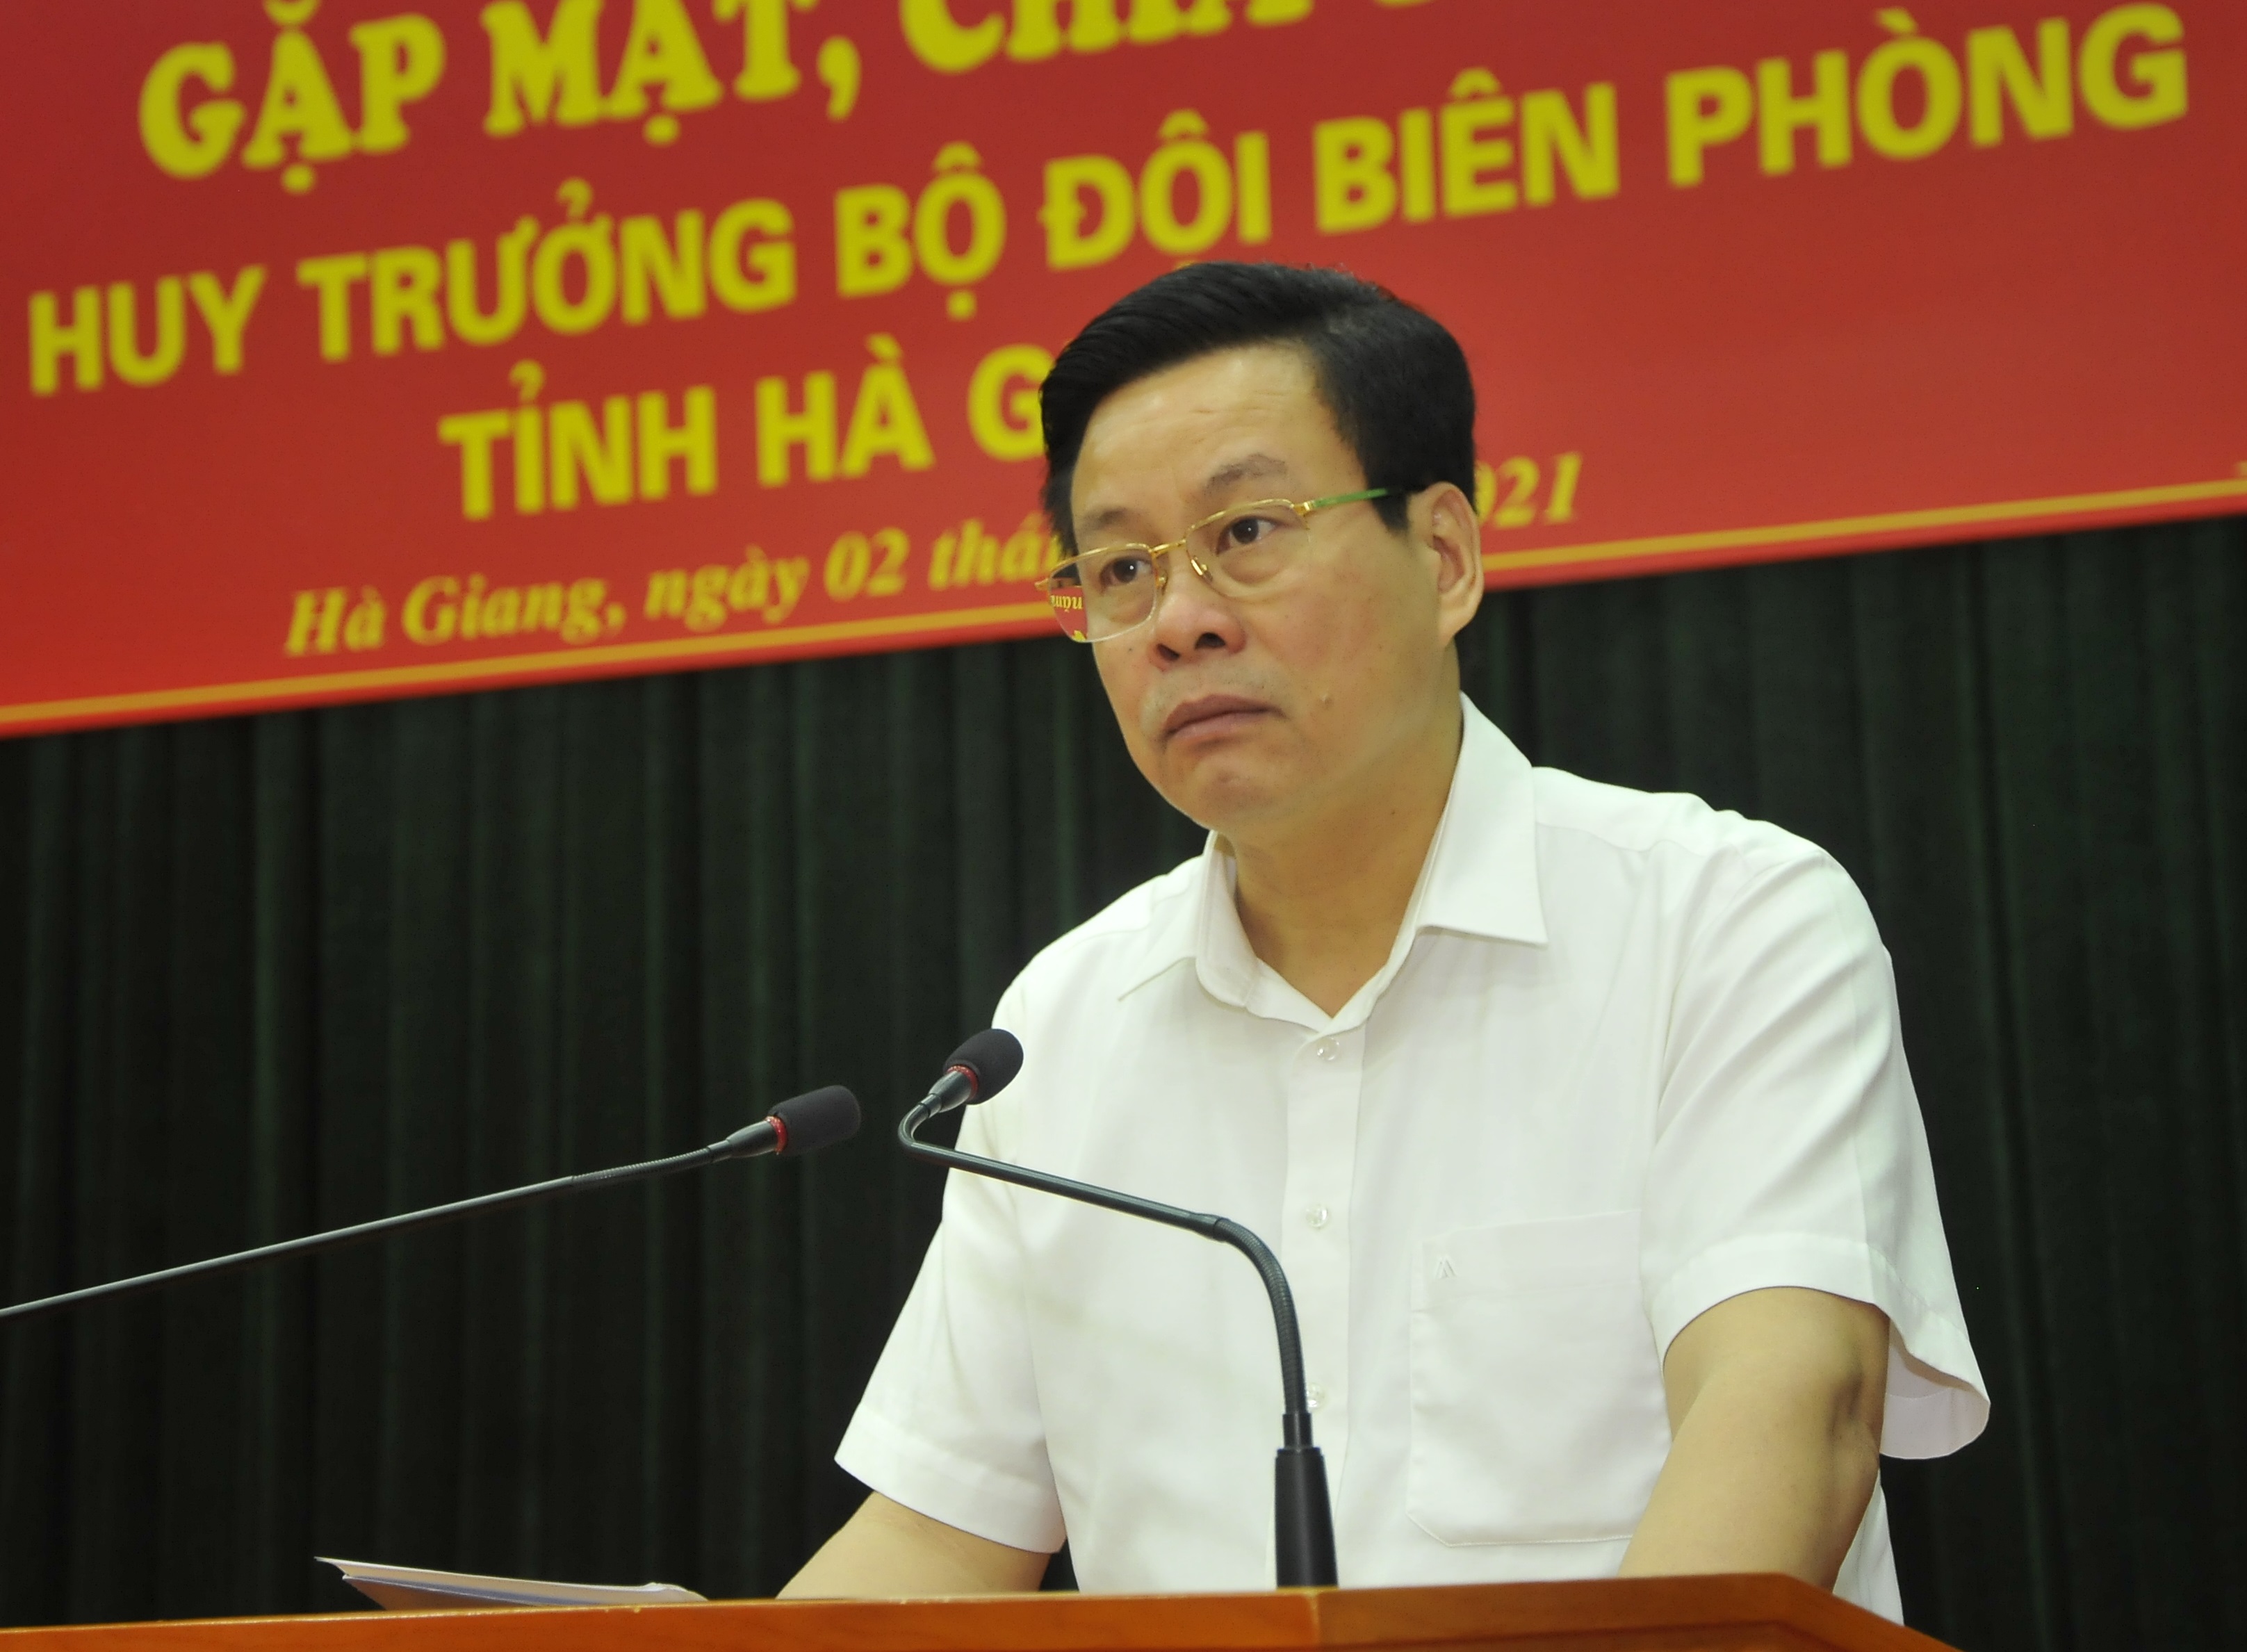 Chủ tịch UBND tỉnh Nguyễn Văn Sơn dự gặp mặt, chia tay Chỉ huy trưởng BĐBP tỉnh